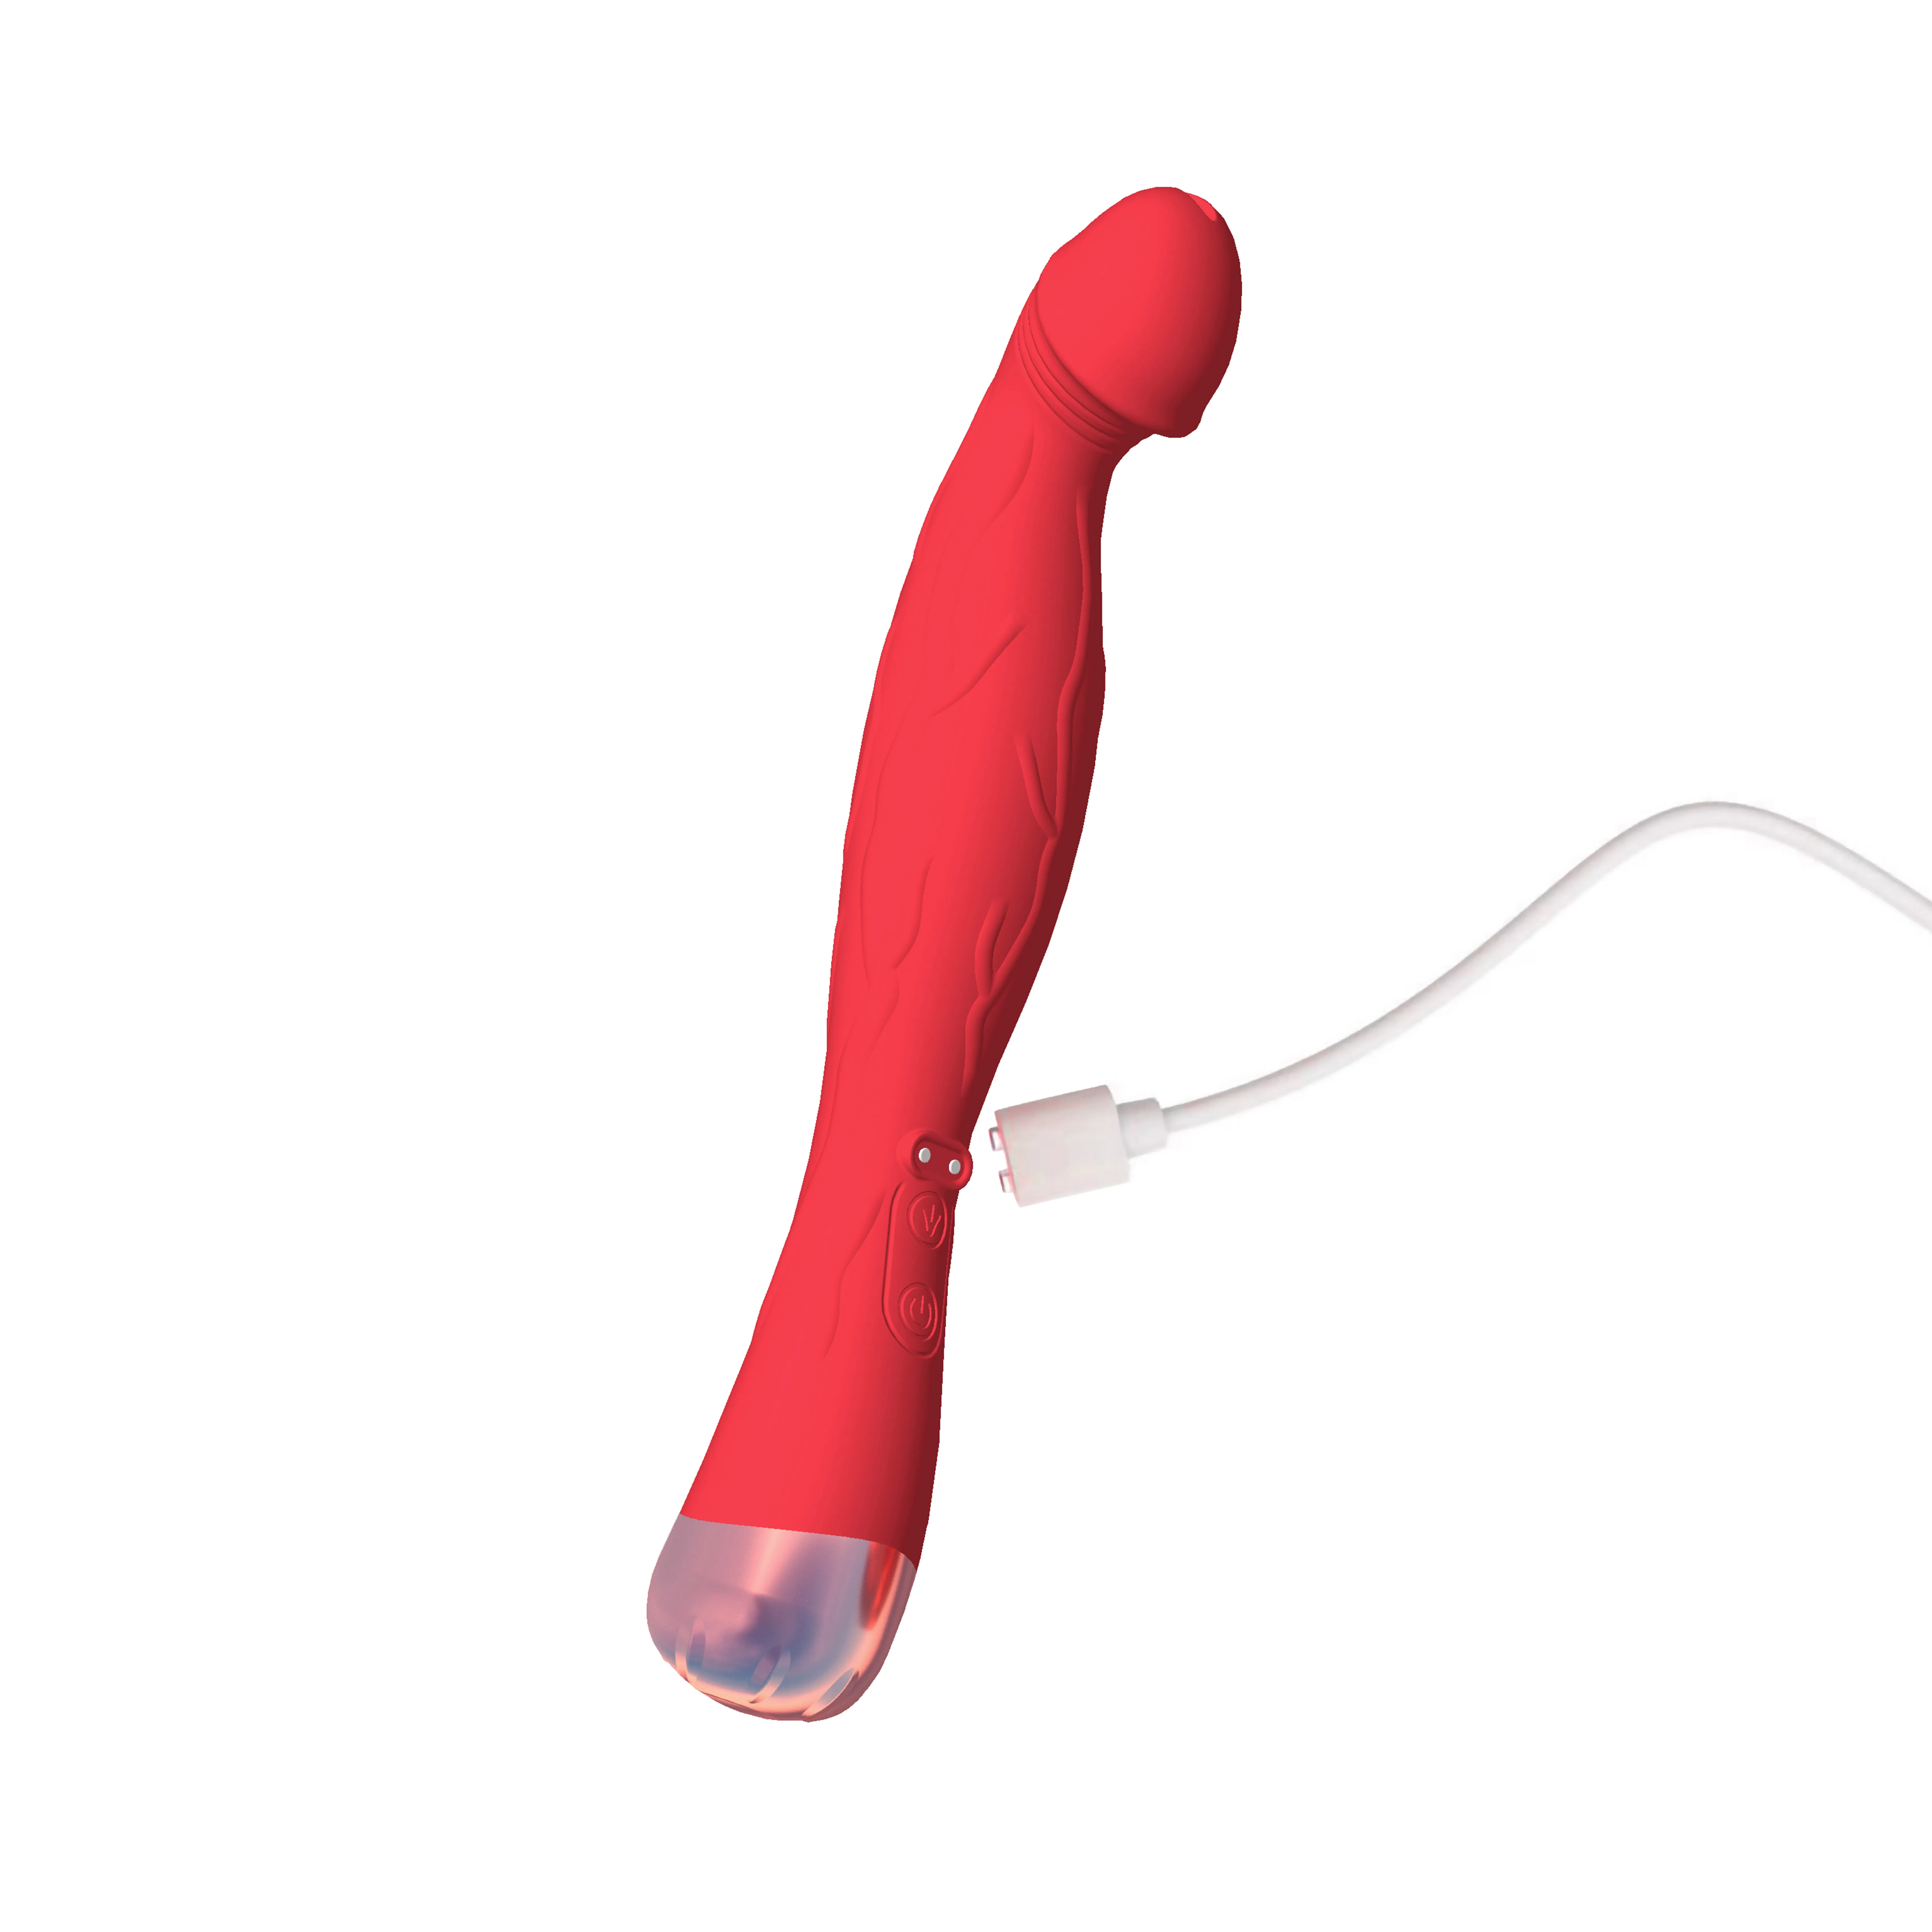 Grande bite longue masturbateur rouge gode pénis forme sexe vibrateur adulte Masturbation sax jouets pour hommes femmes Gay sextoy sexytoy saxtoy